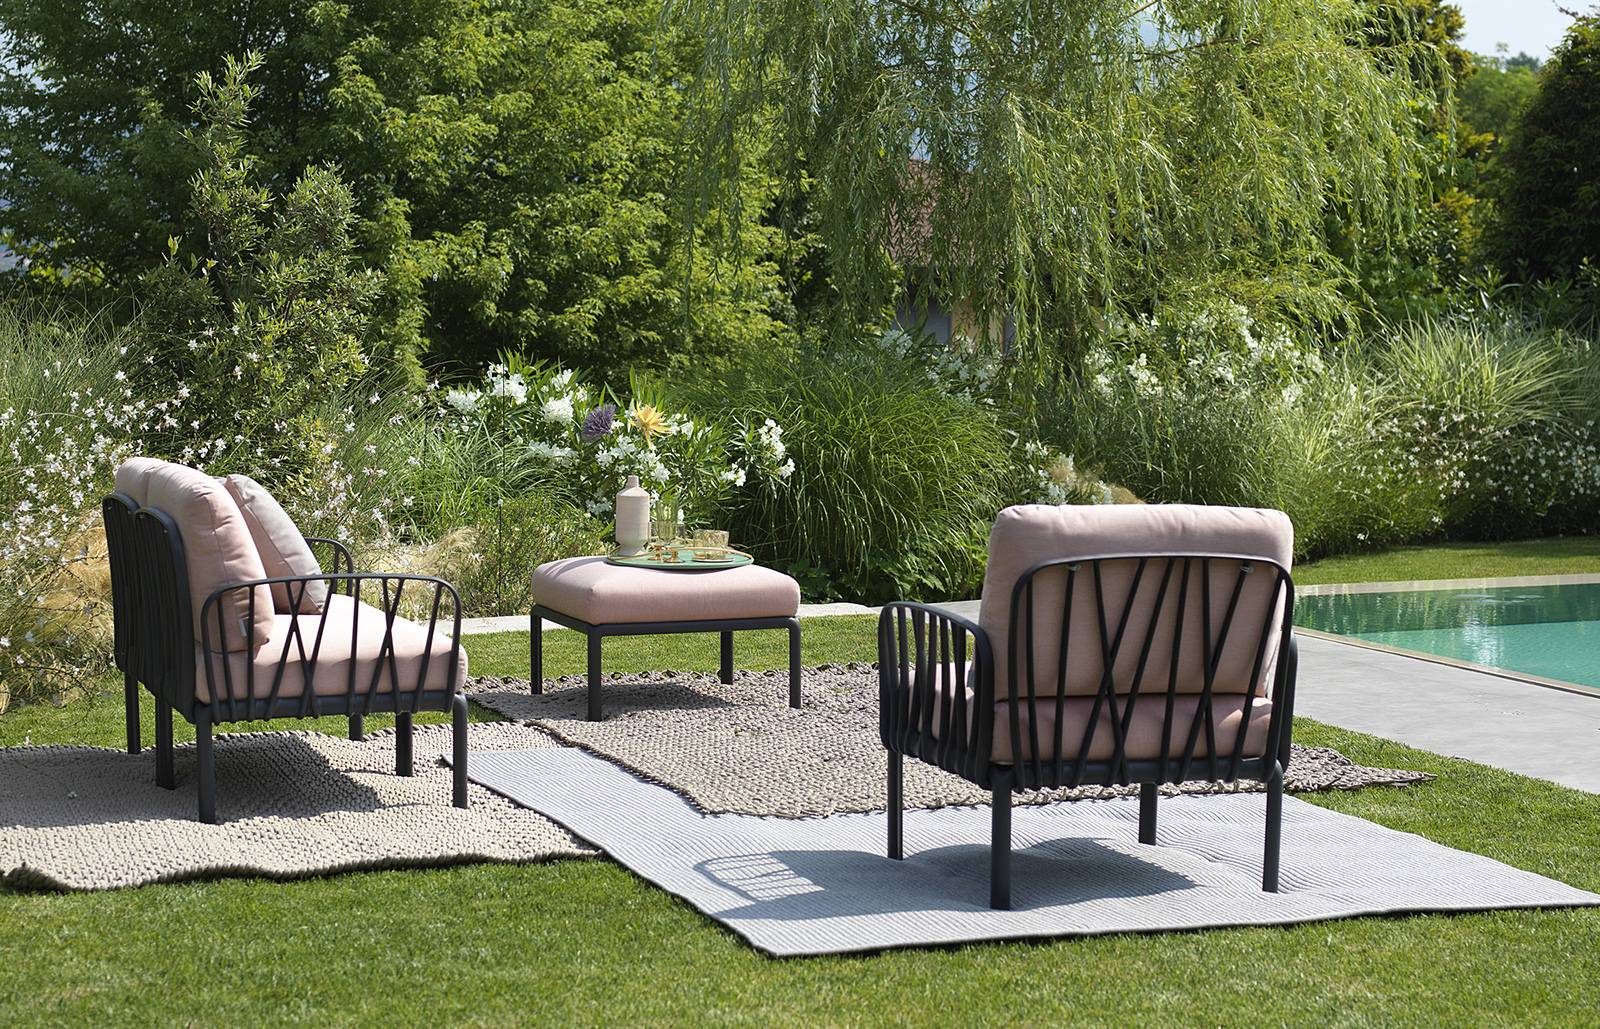 sancilio evotech molfetta - ambientazioni outdoor arredo giardino sedie sedute poltrone divani complementi lounge NARDI